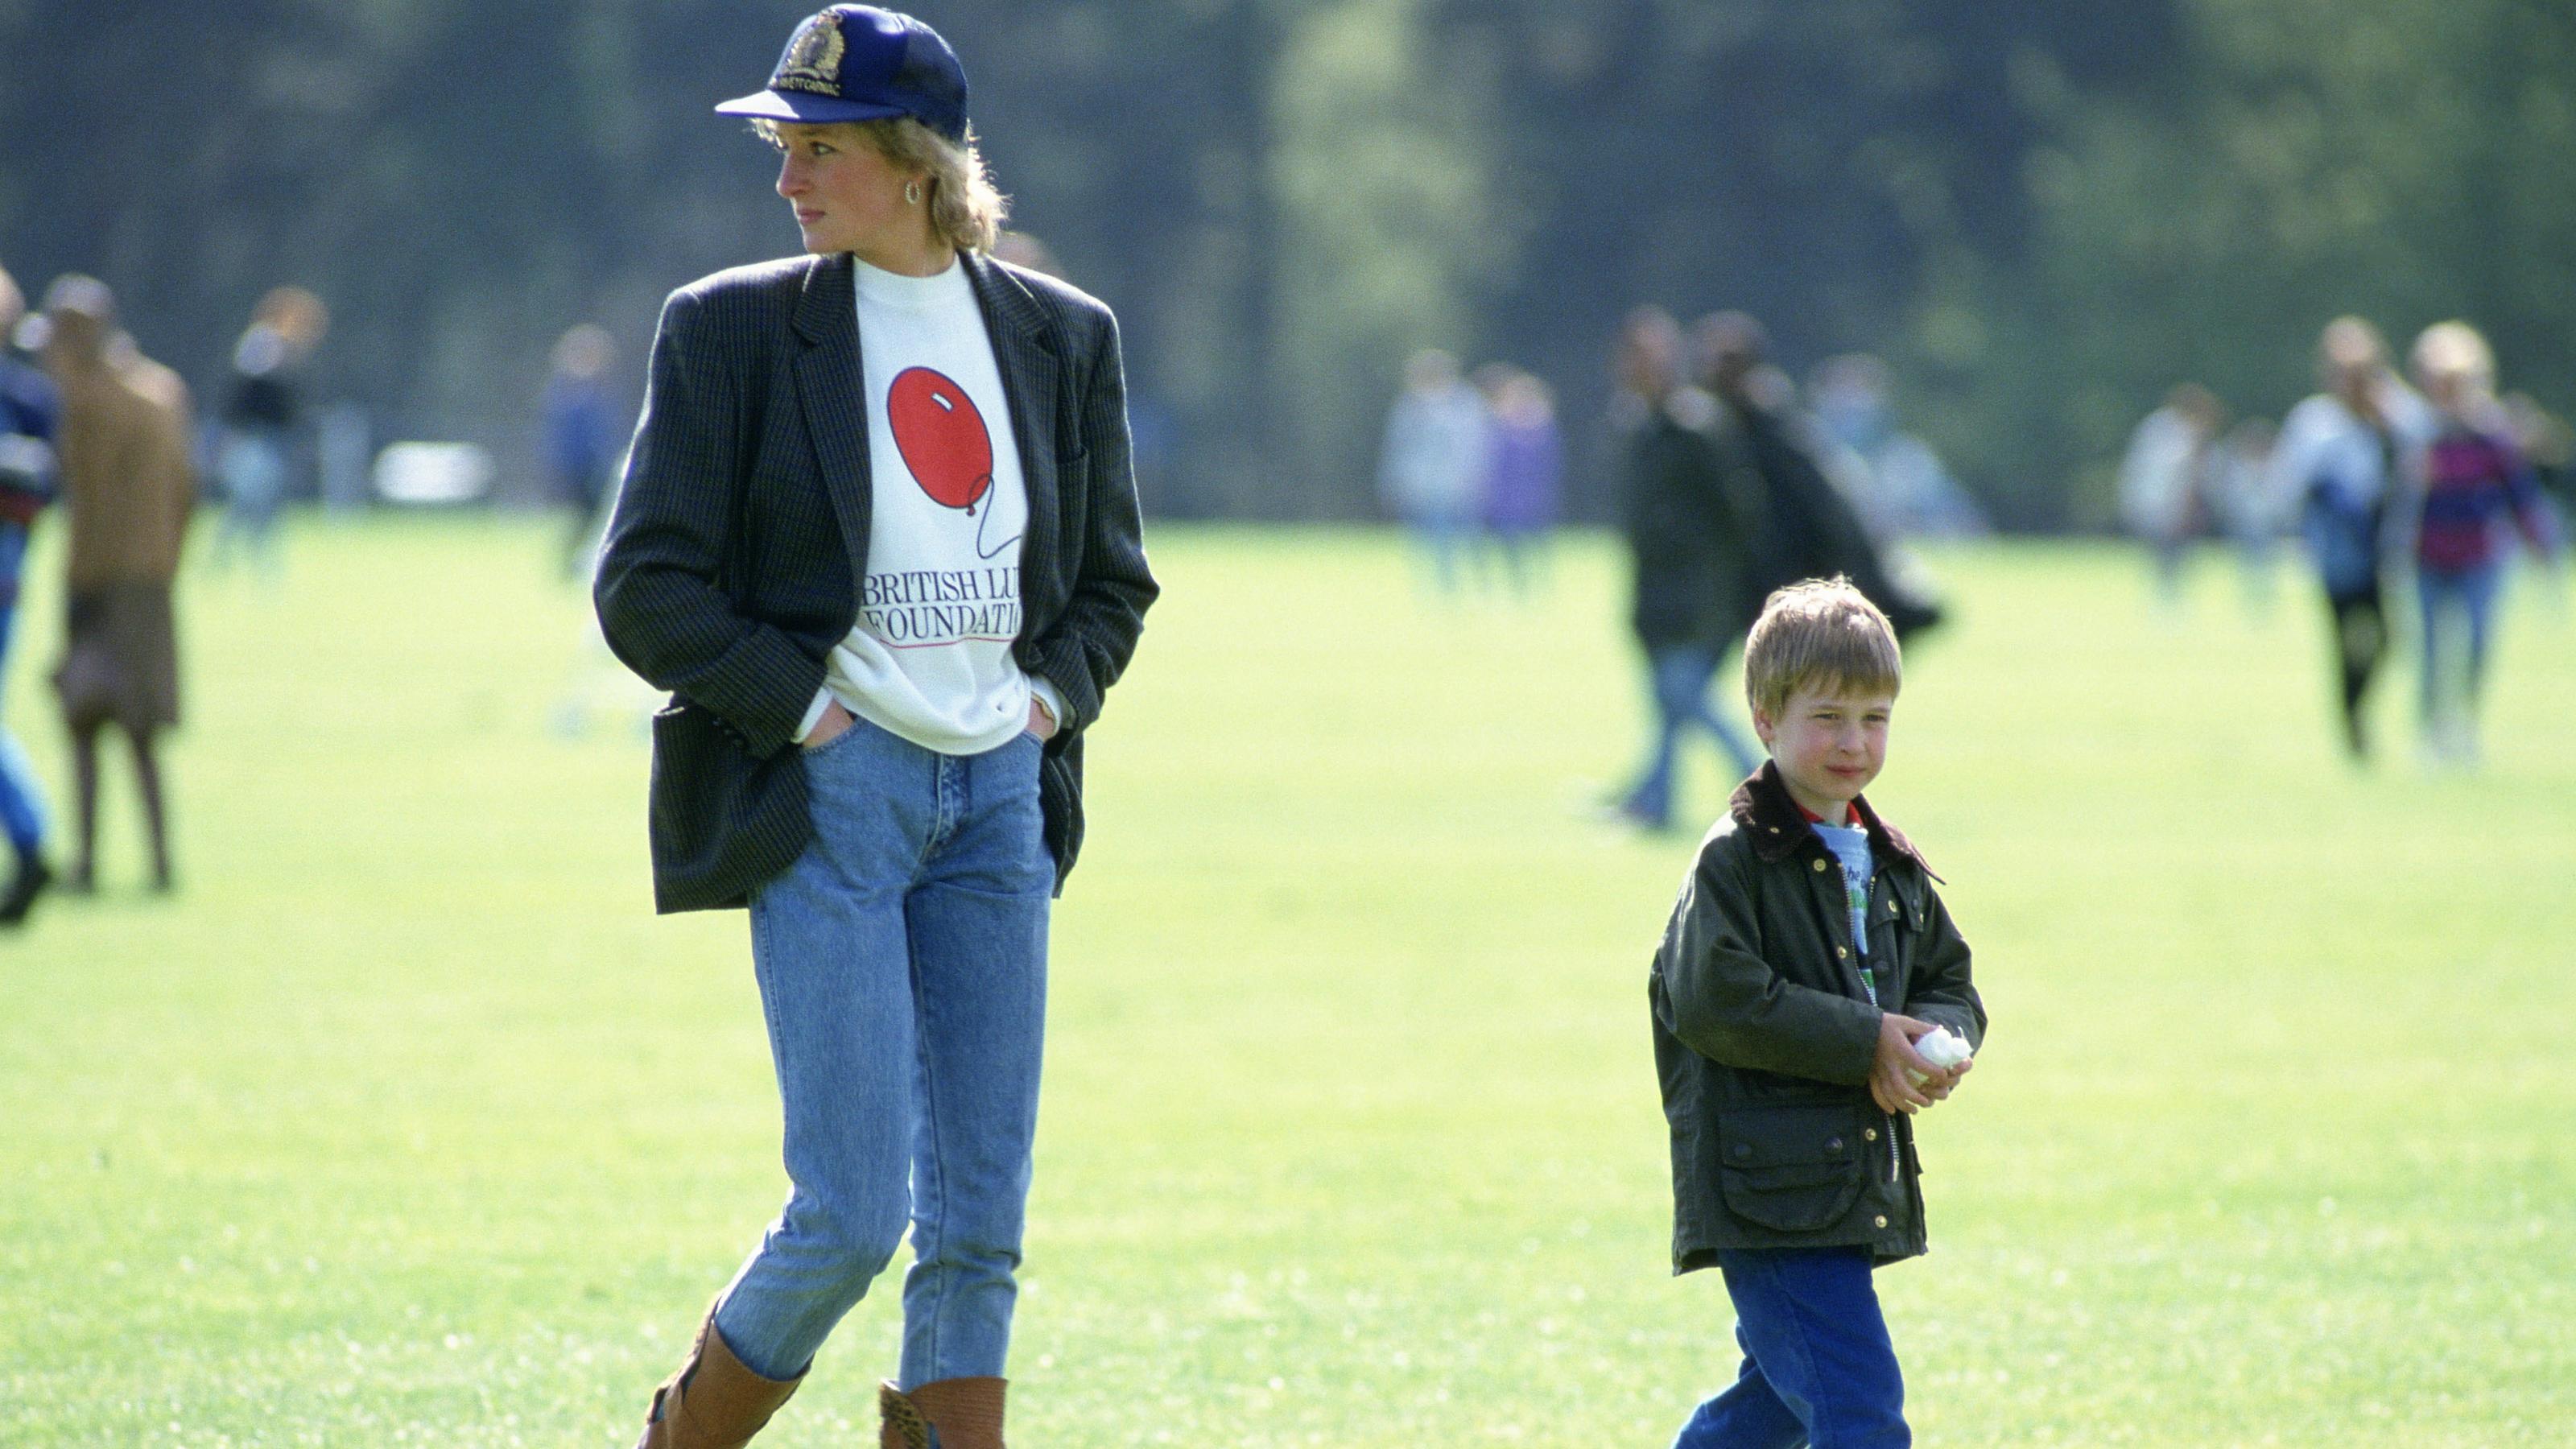 Lady Diana 1988 bei einem Polo-Spiel im lässigen Jeans-Look, der heute wieder im Trend ist.